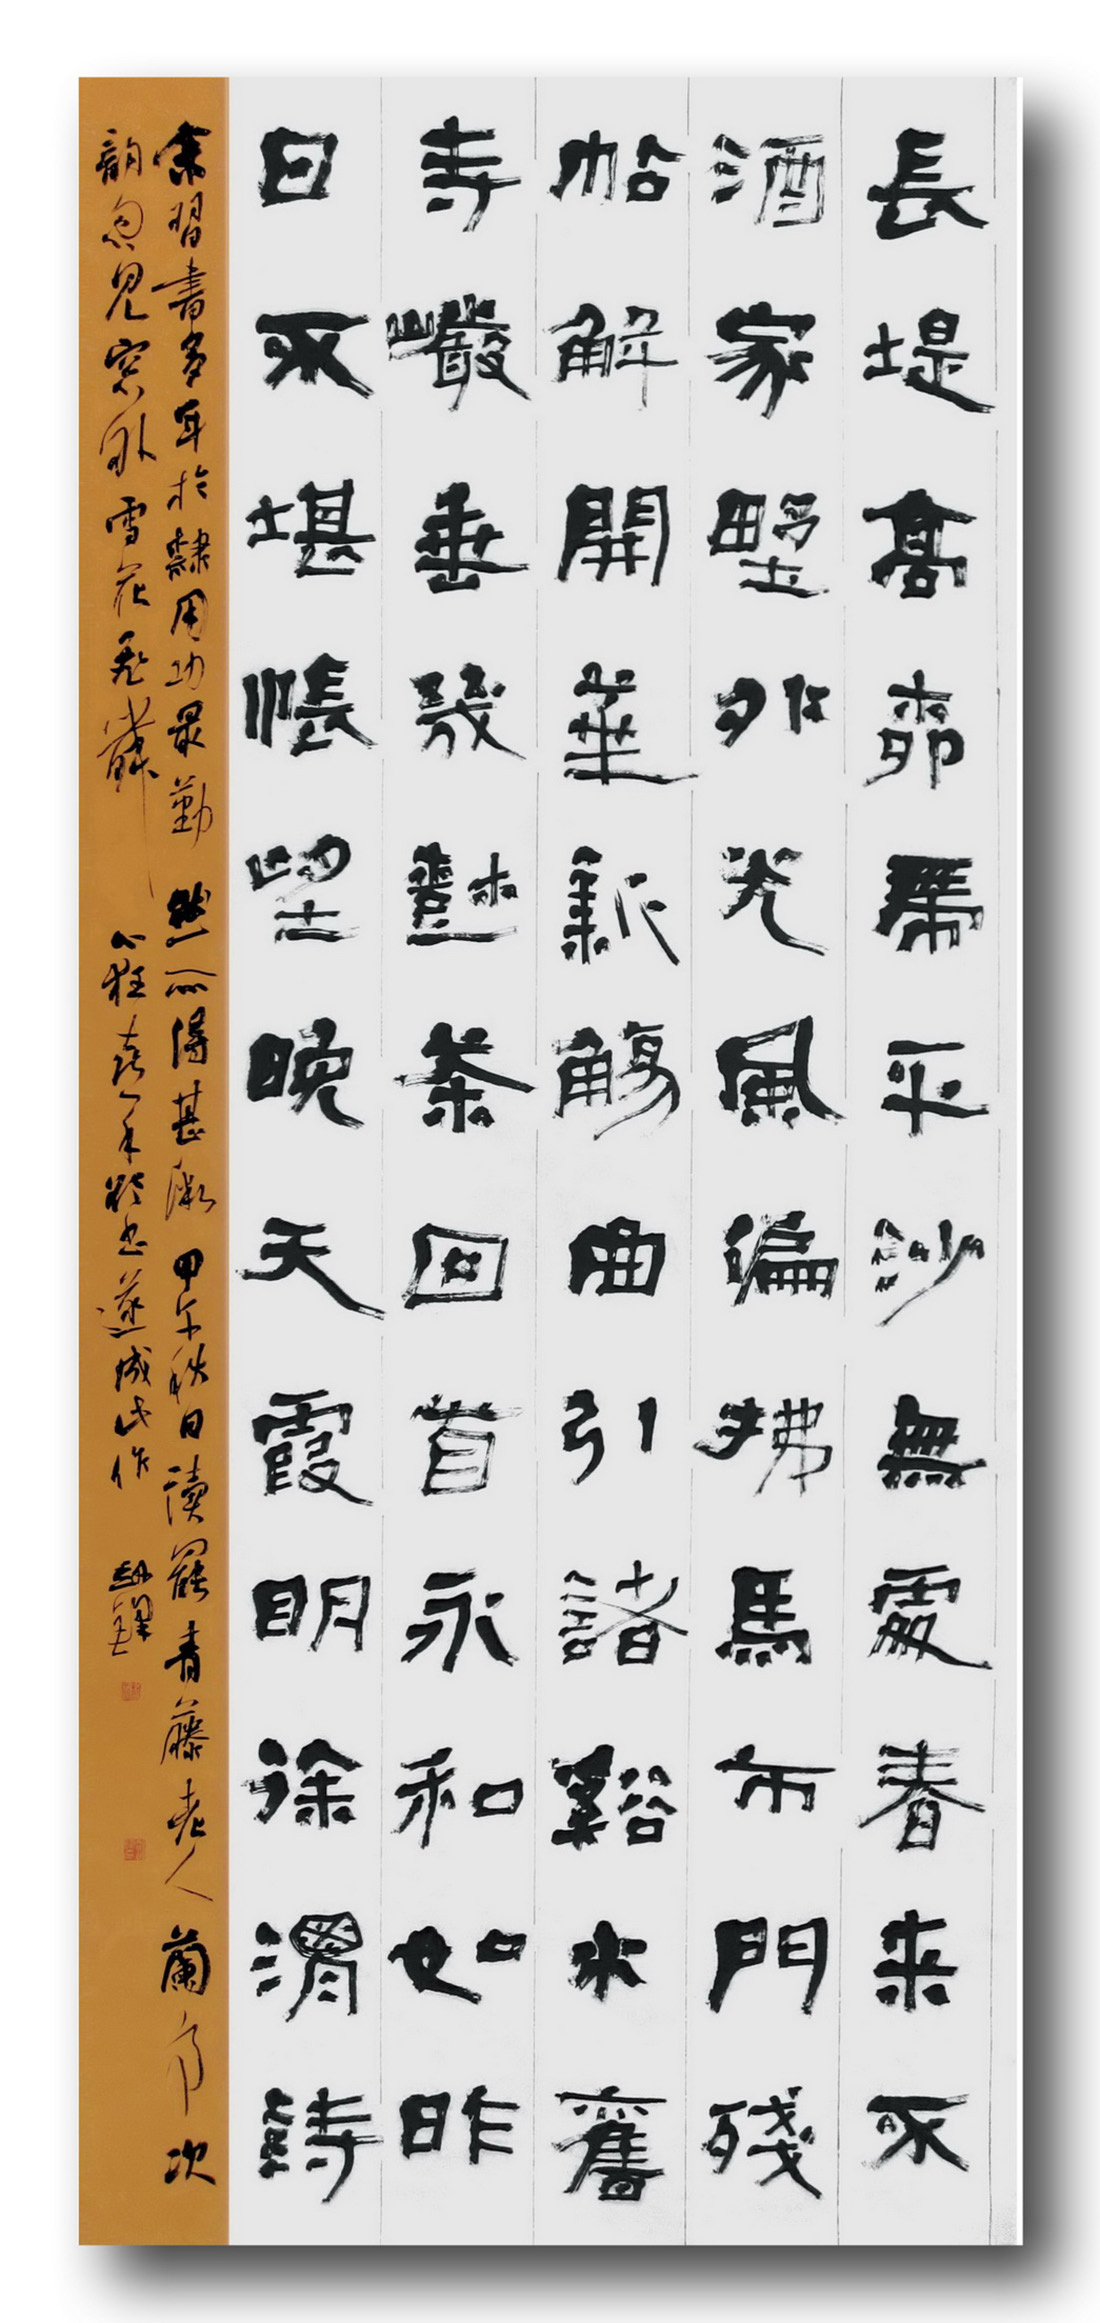 楊劍鋒隸書八尺條幅“徐渭《蘭亭次韻》”